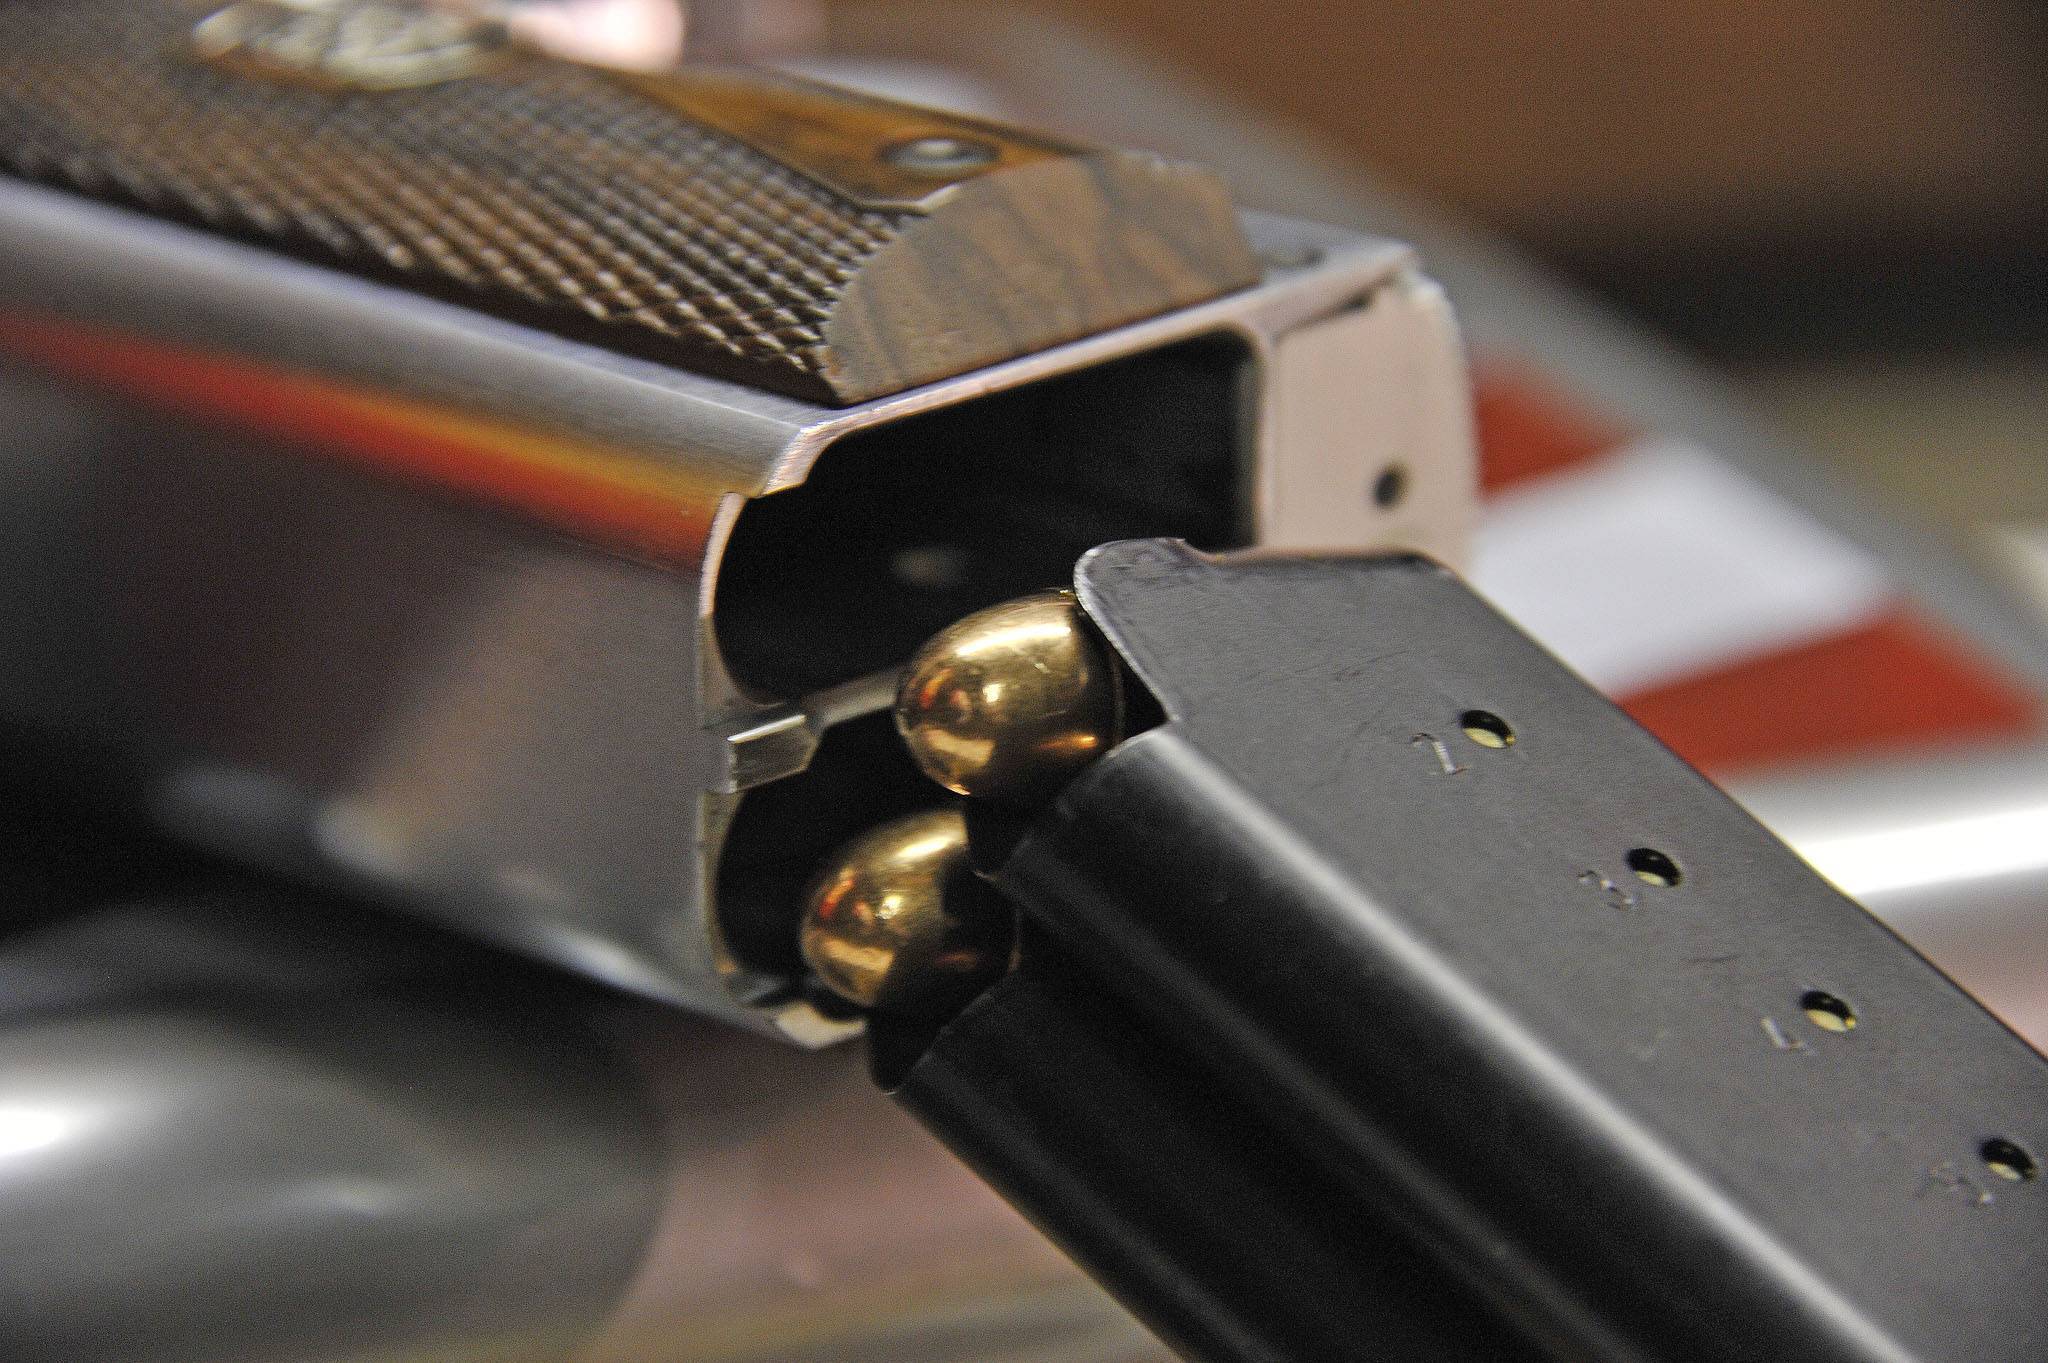 Пистолет af2001-a1 second century arsenal firearms — характеристики, ттх, фото